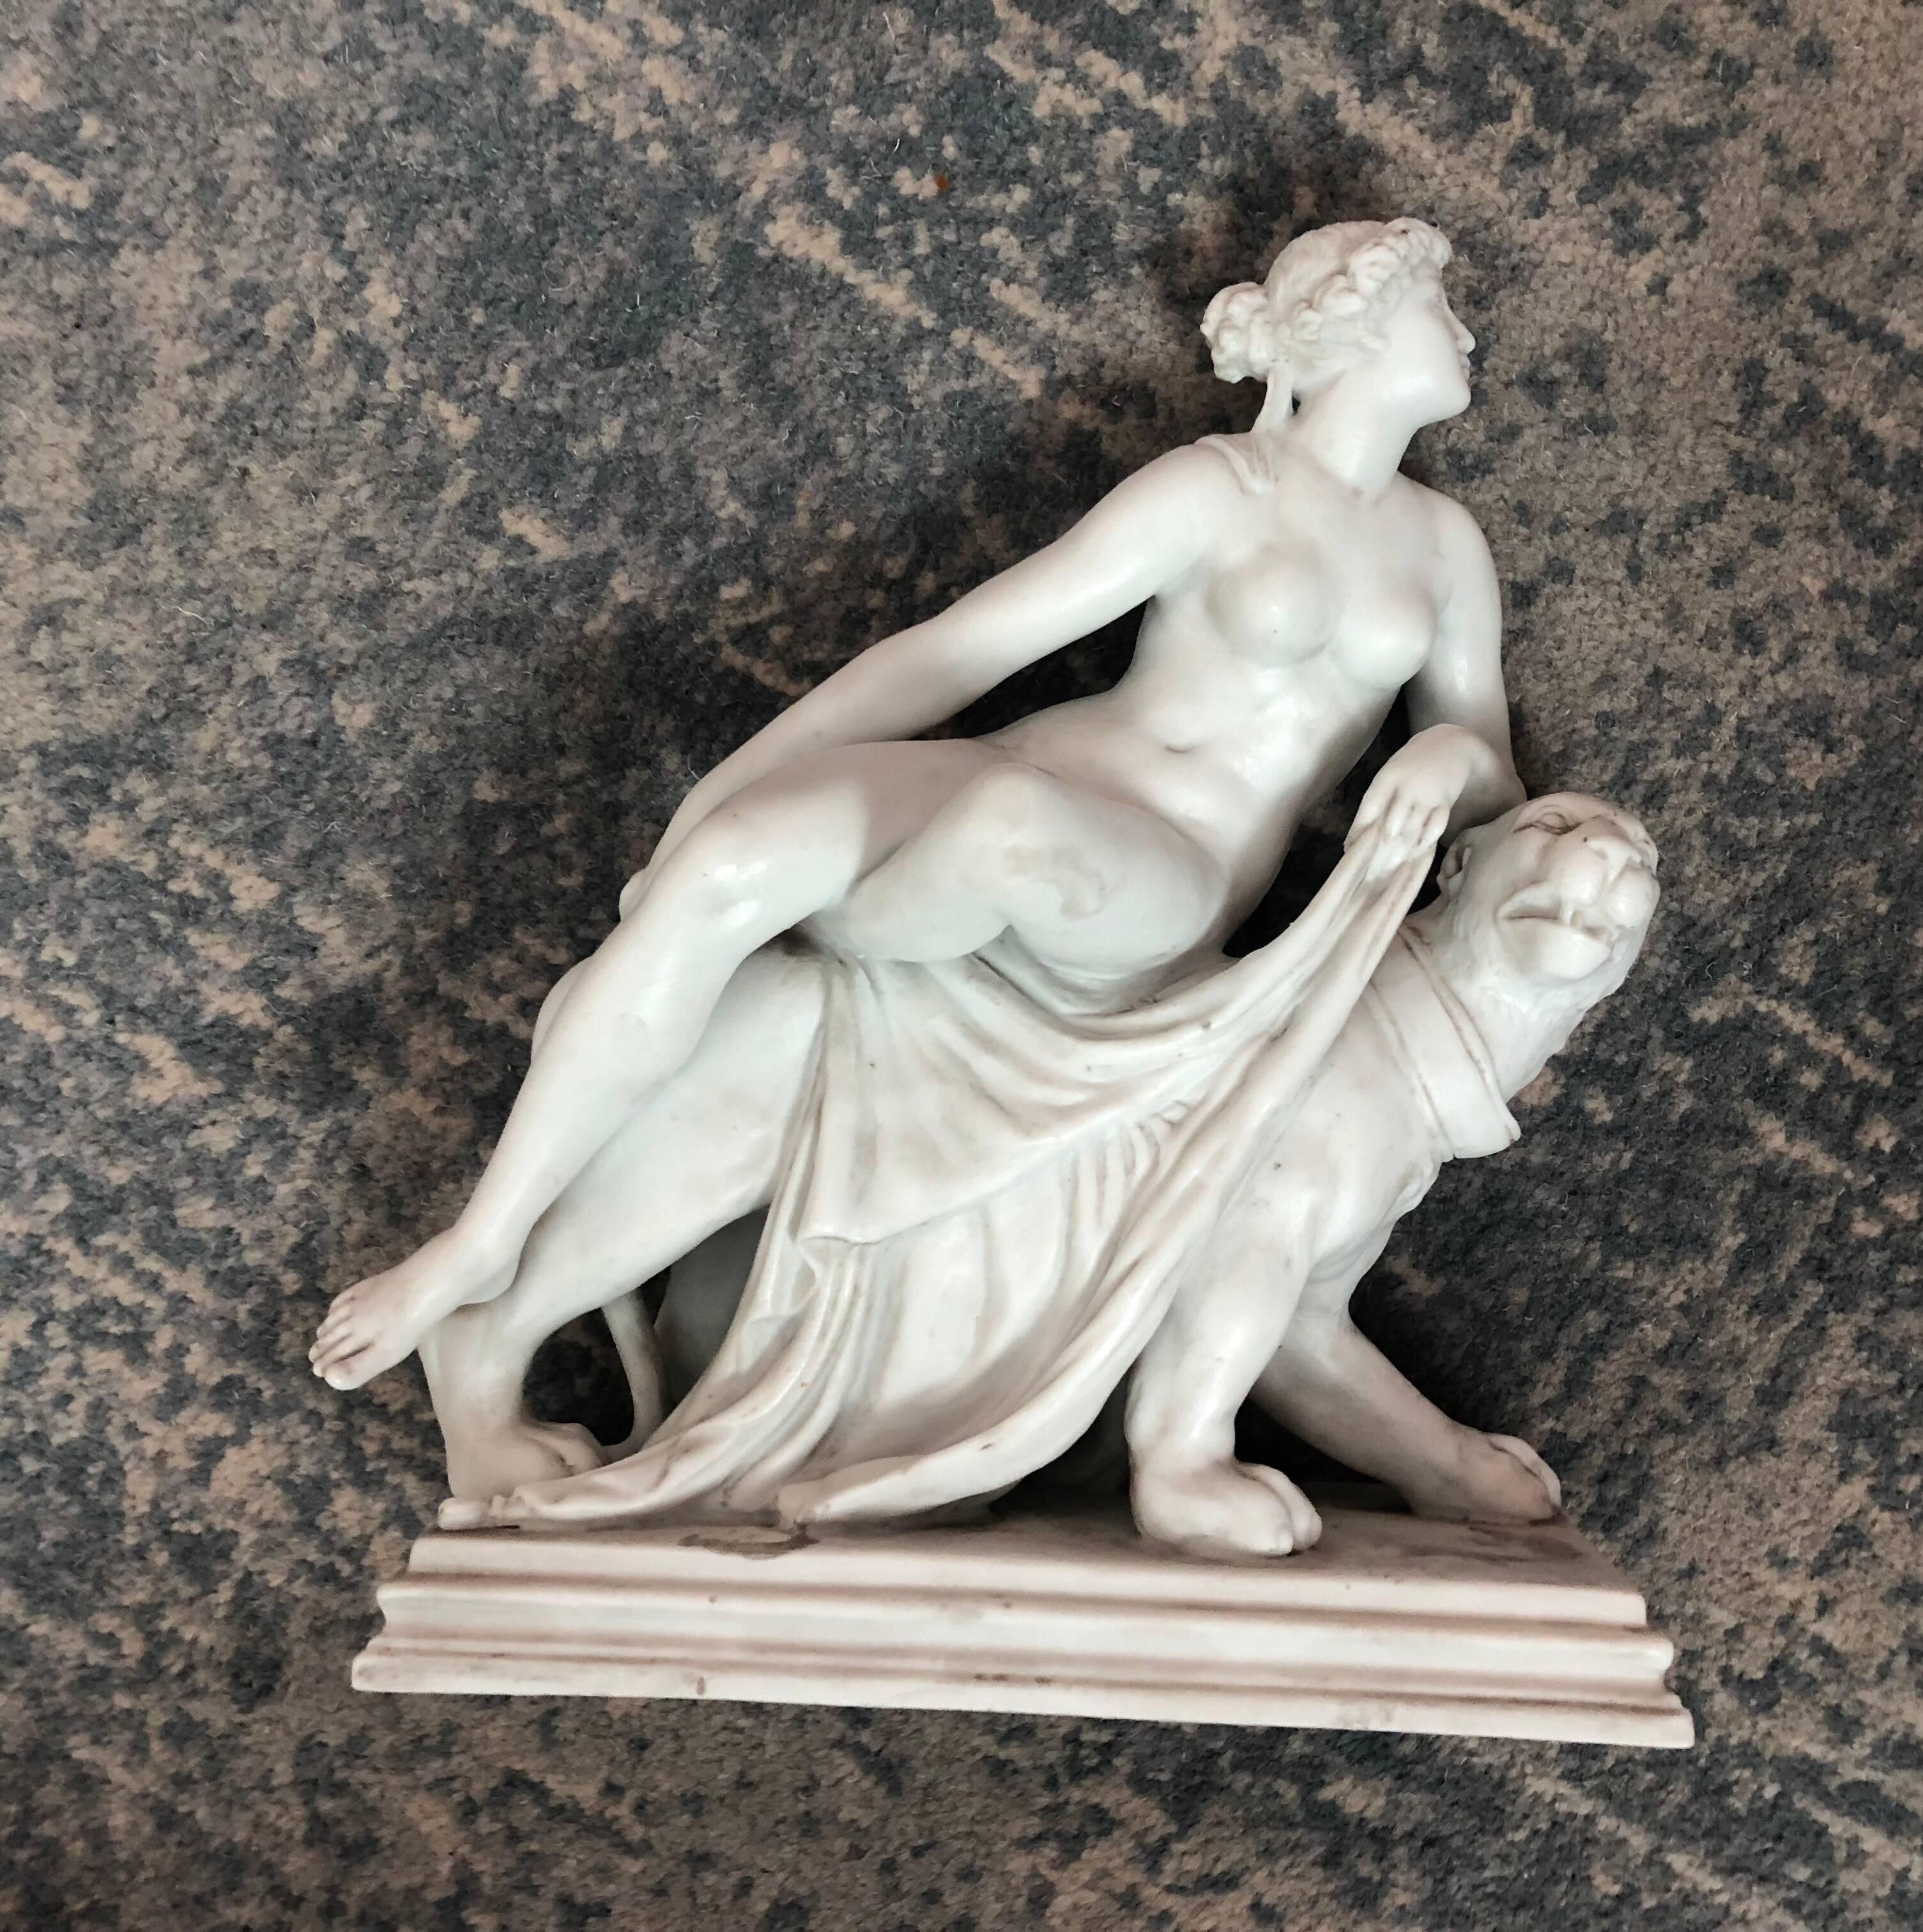 Amazing 19th century Italian white marble neoclassical figure after Dannecker.

Johann Heinrich von Dannecker (October 16, 1758 in Stuttgart – December 8, 1841 in Stuttgart) was a German sculptor.

He was the third of five children of Georg